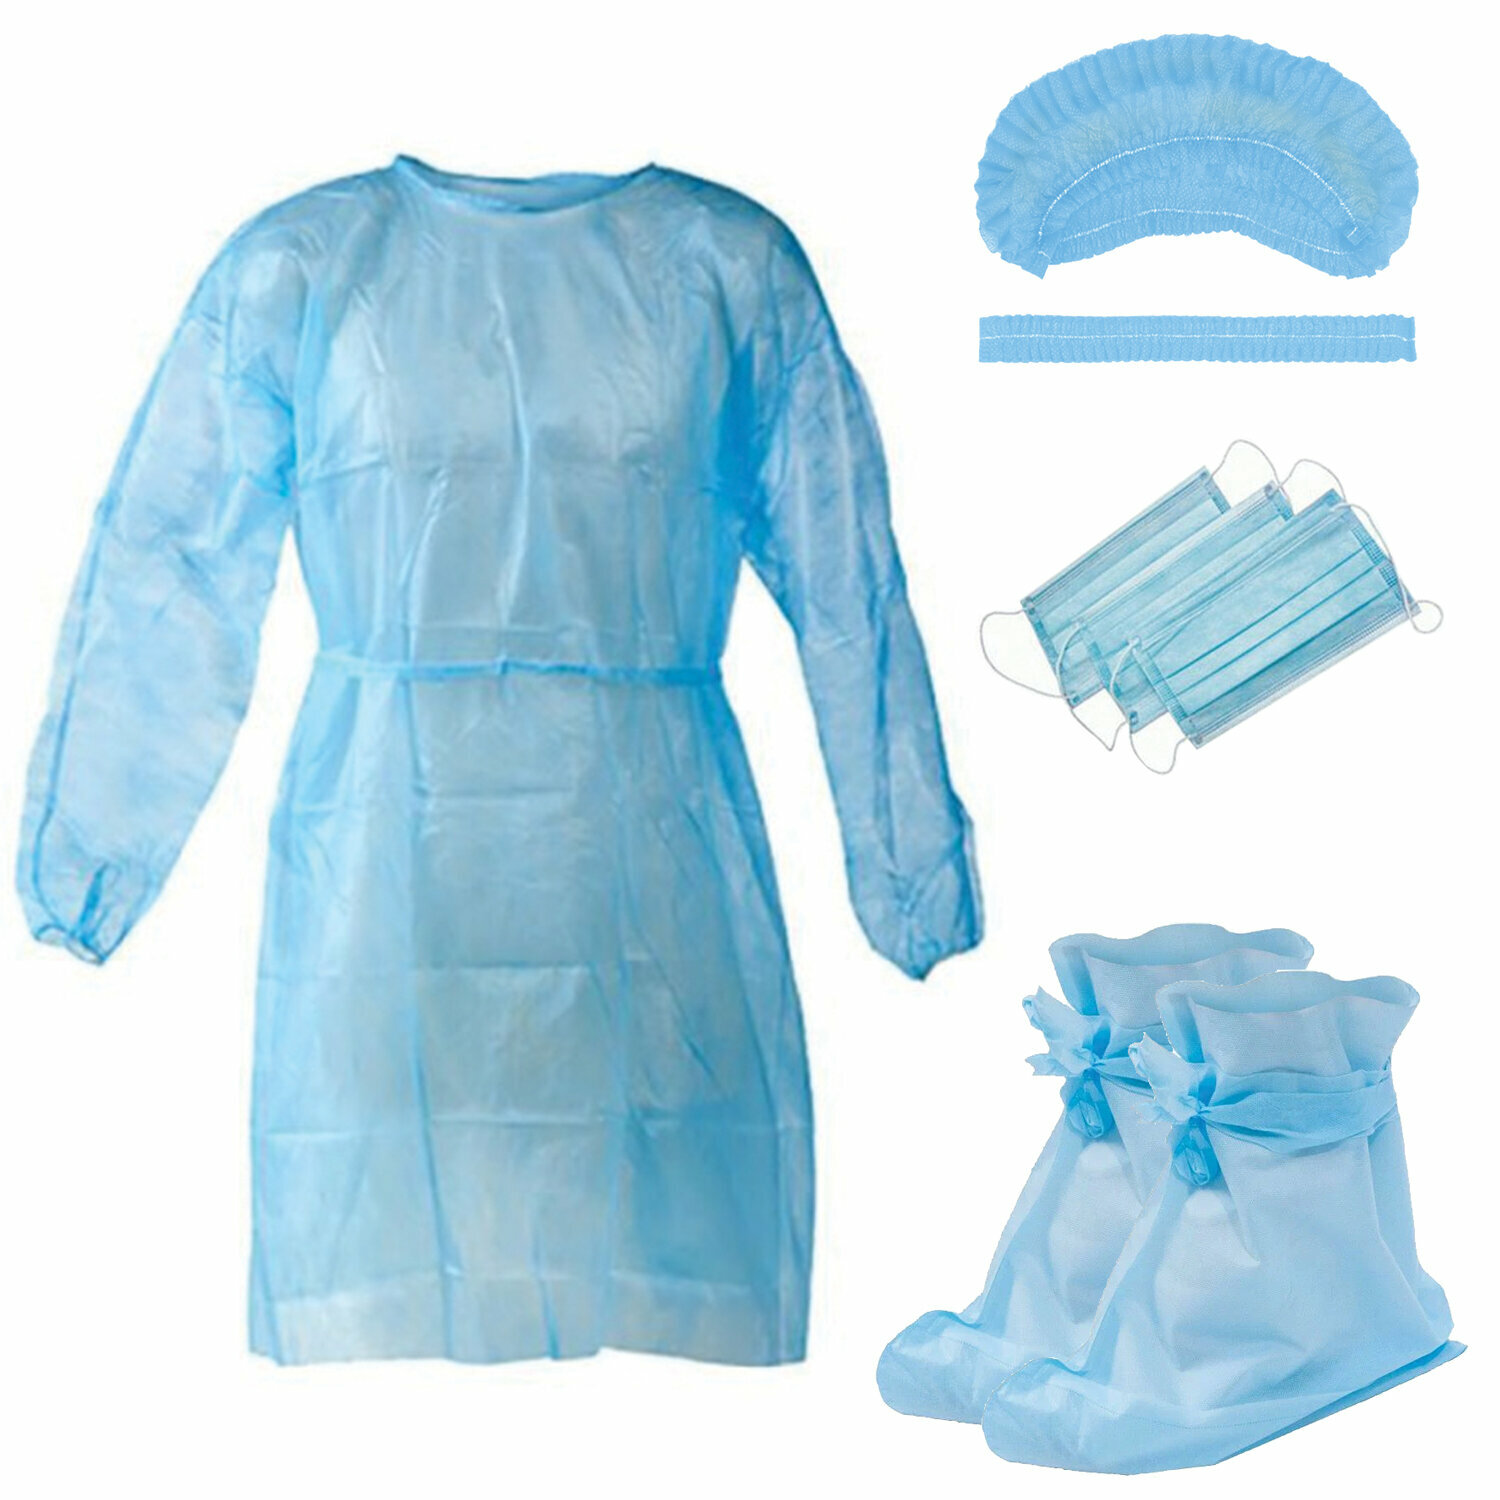 Комплект одежды защитный стерильный (халат шапочка маска бахилы) NF В наборе: 1компл.